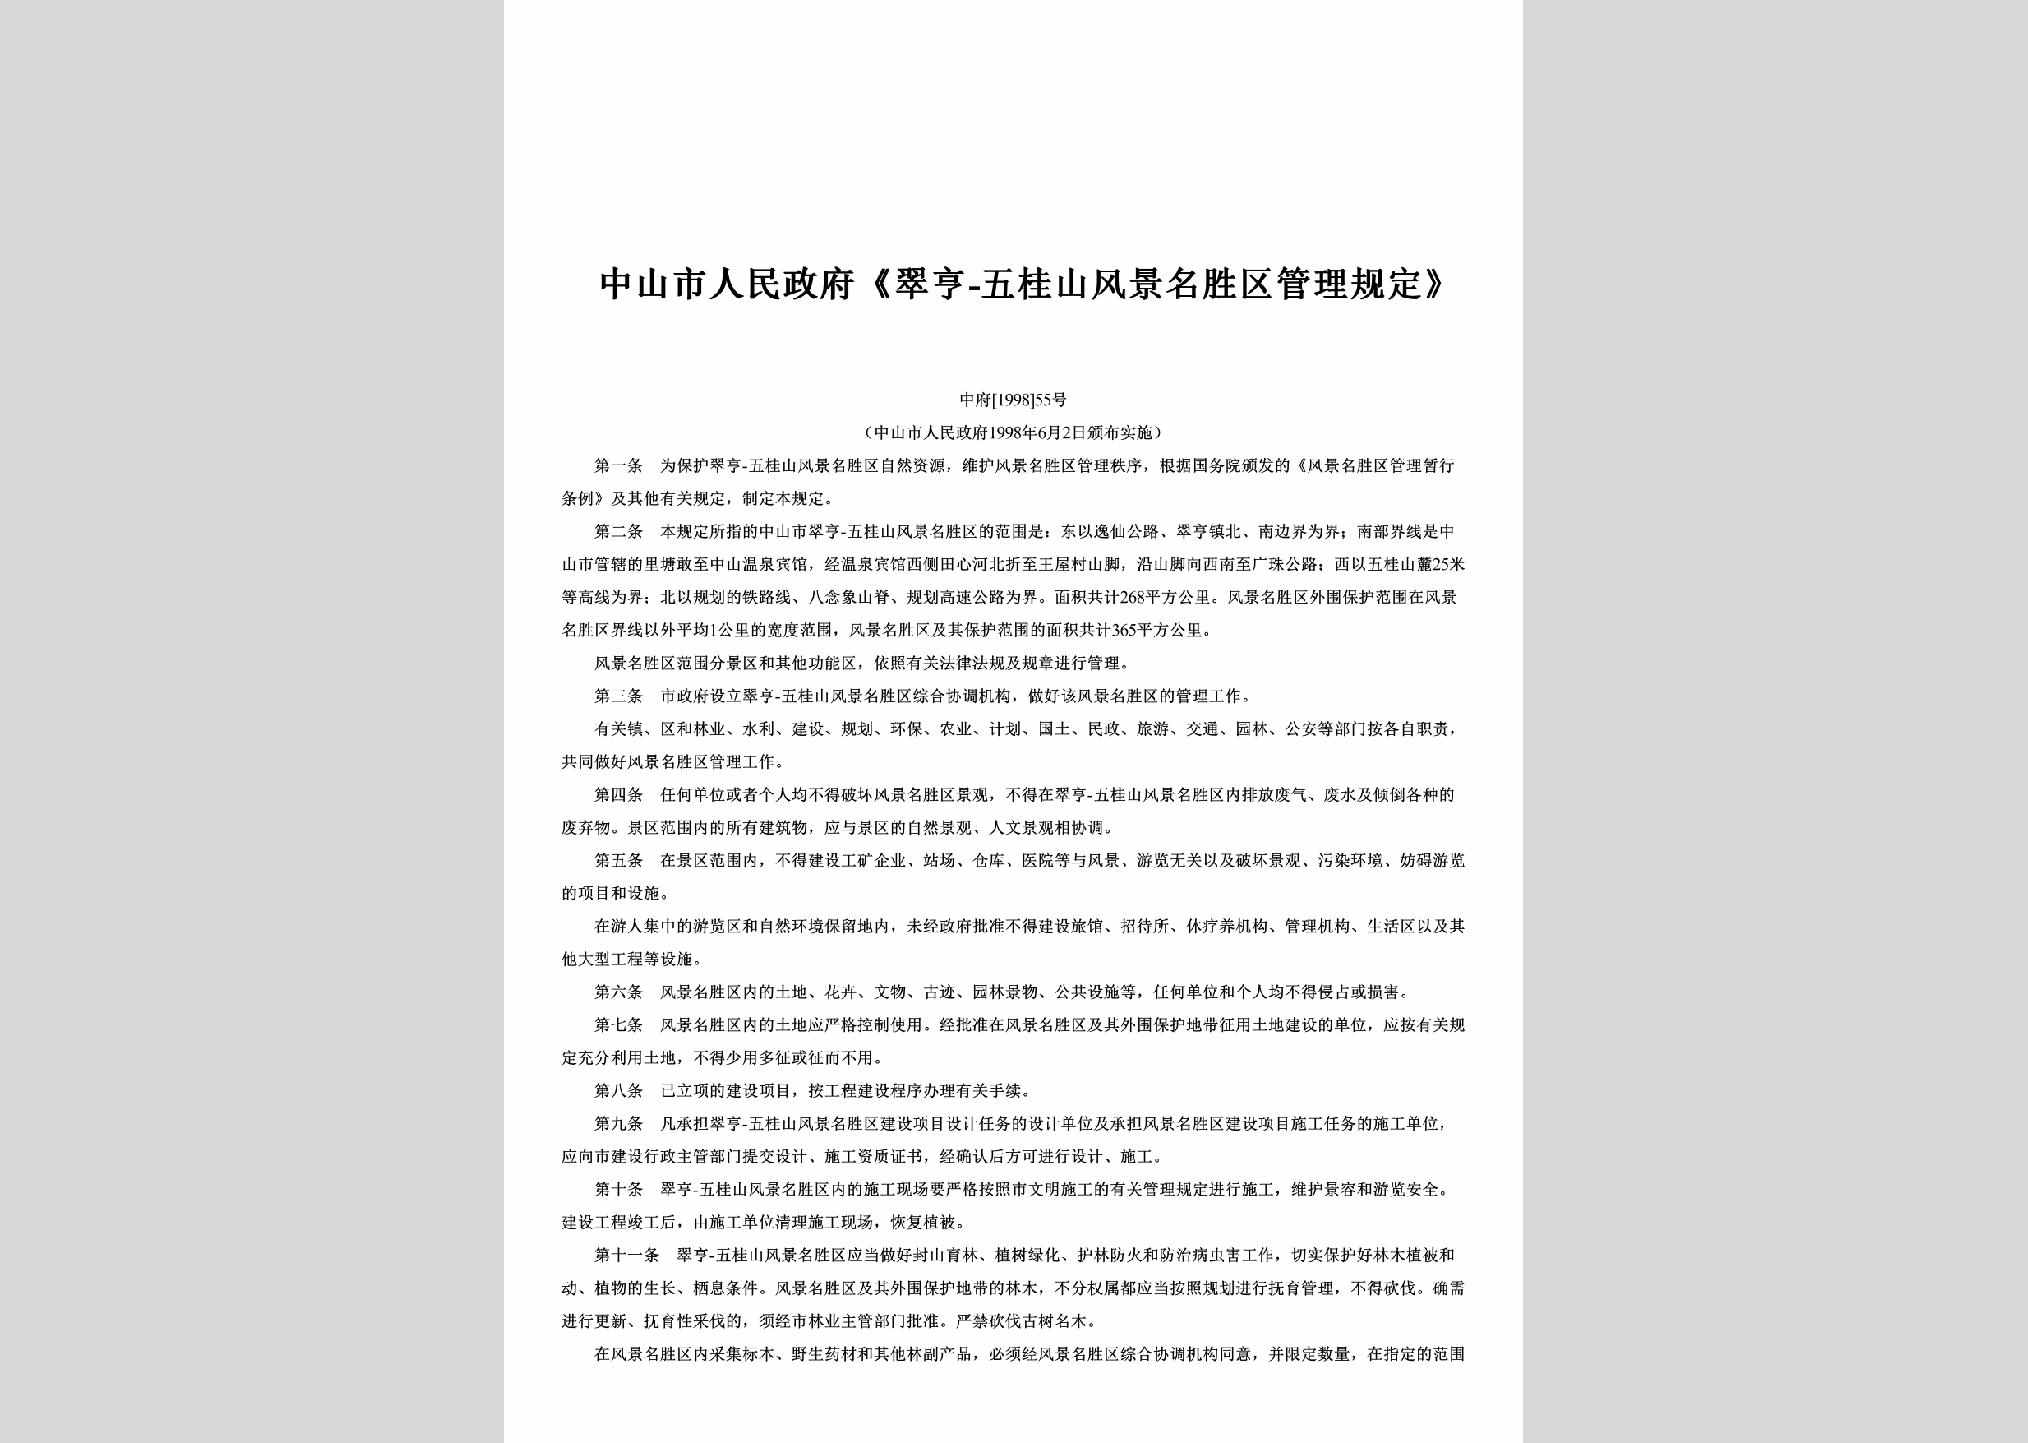 中府[1998]55号：《翠亨-五桂山风景名胜区管理规定》